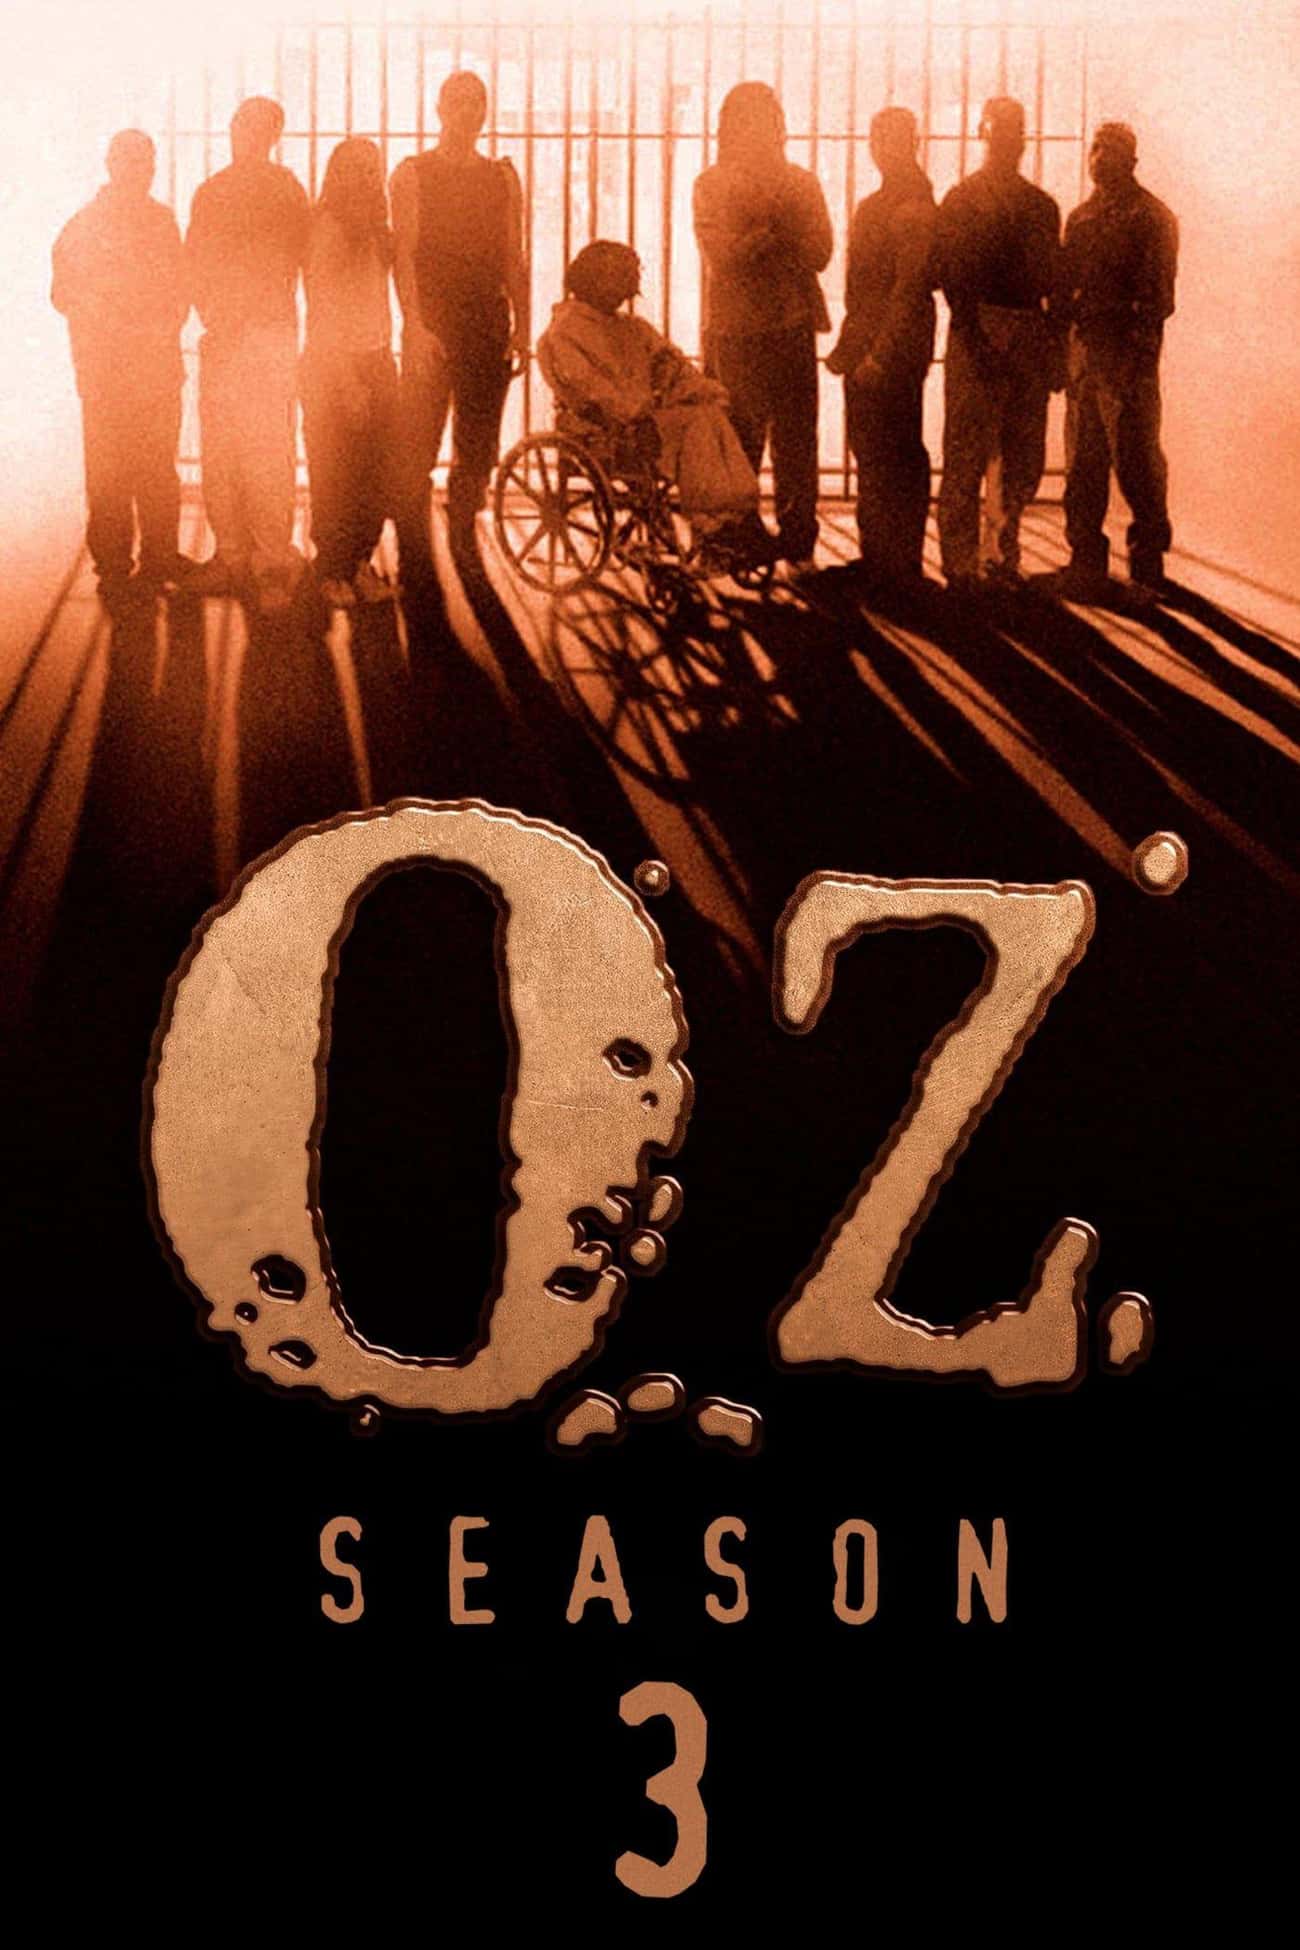 Oz - Season 3